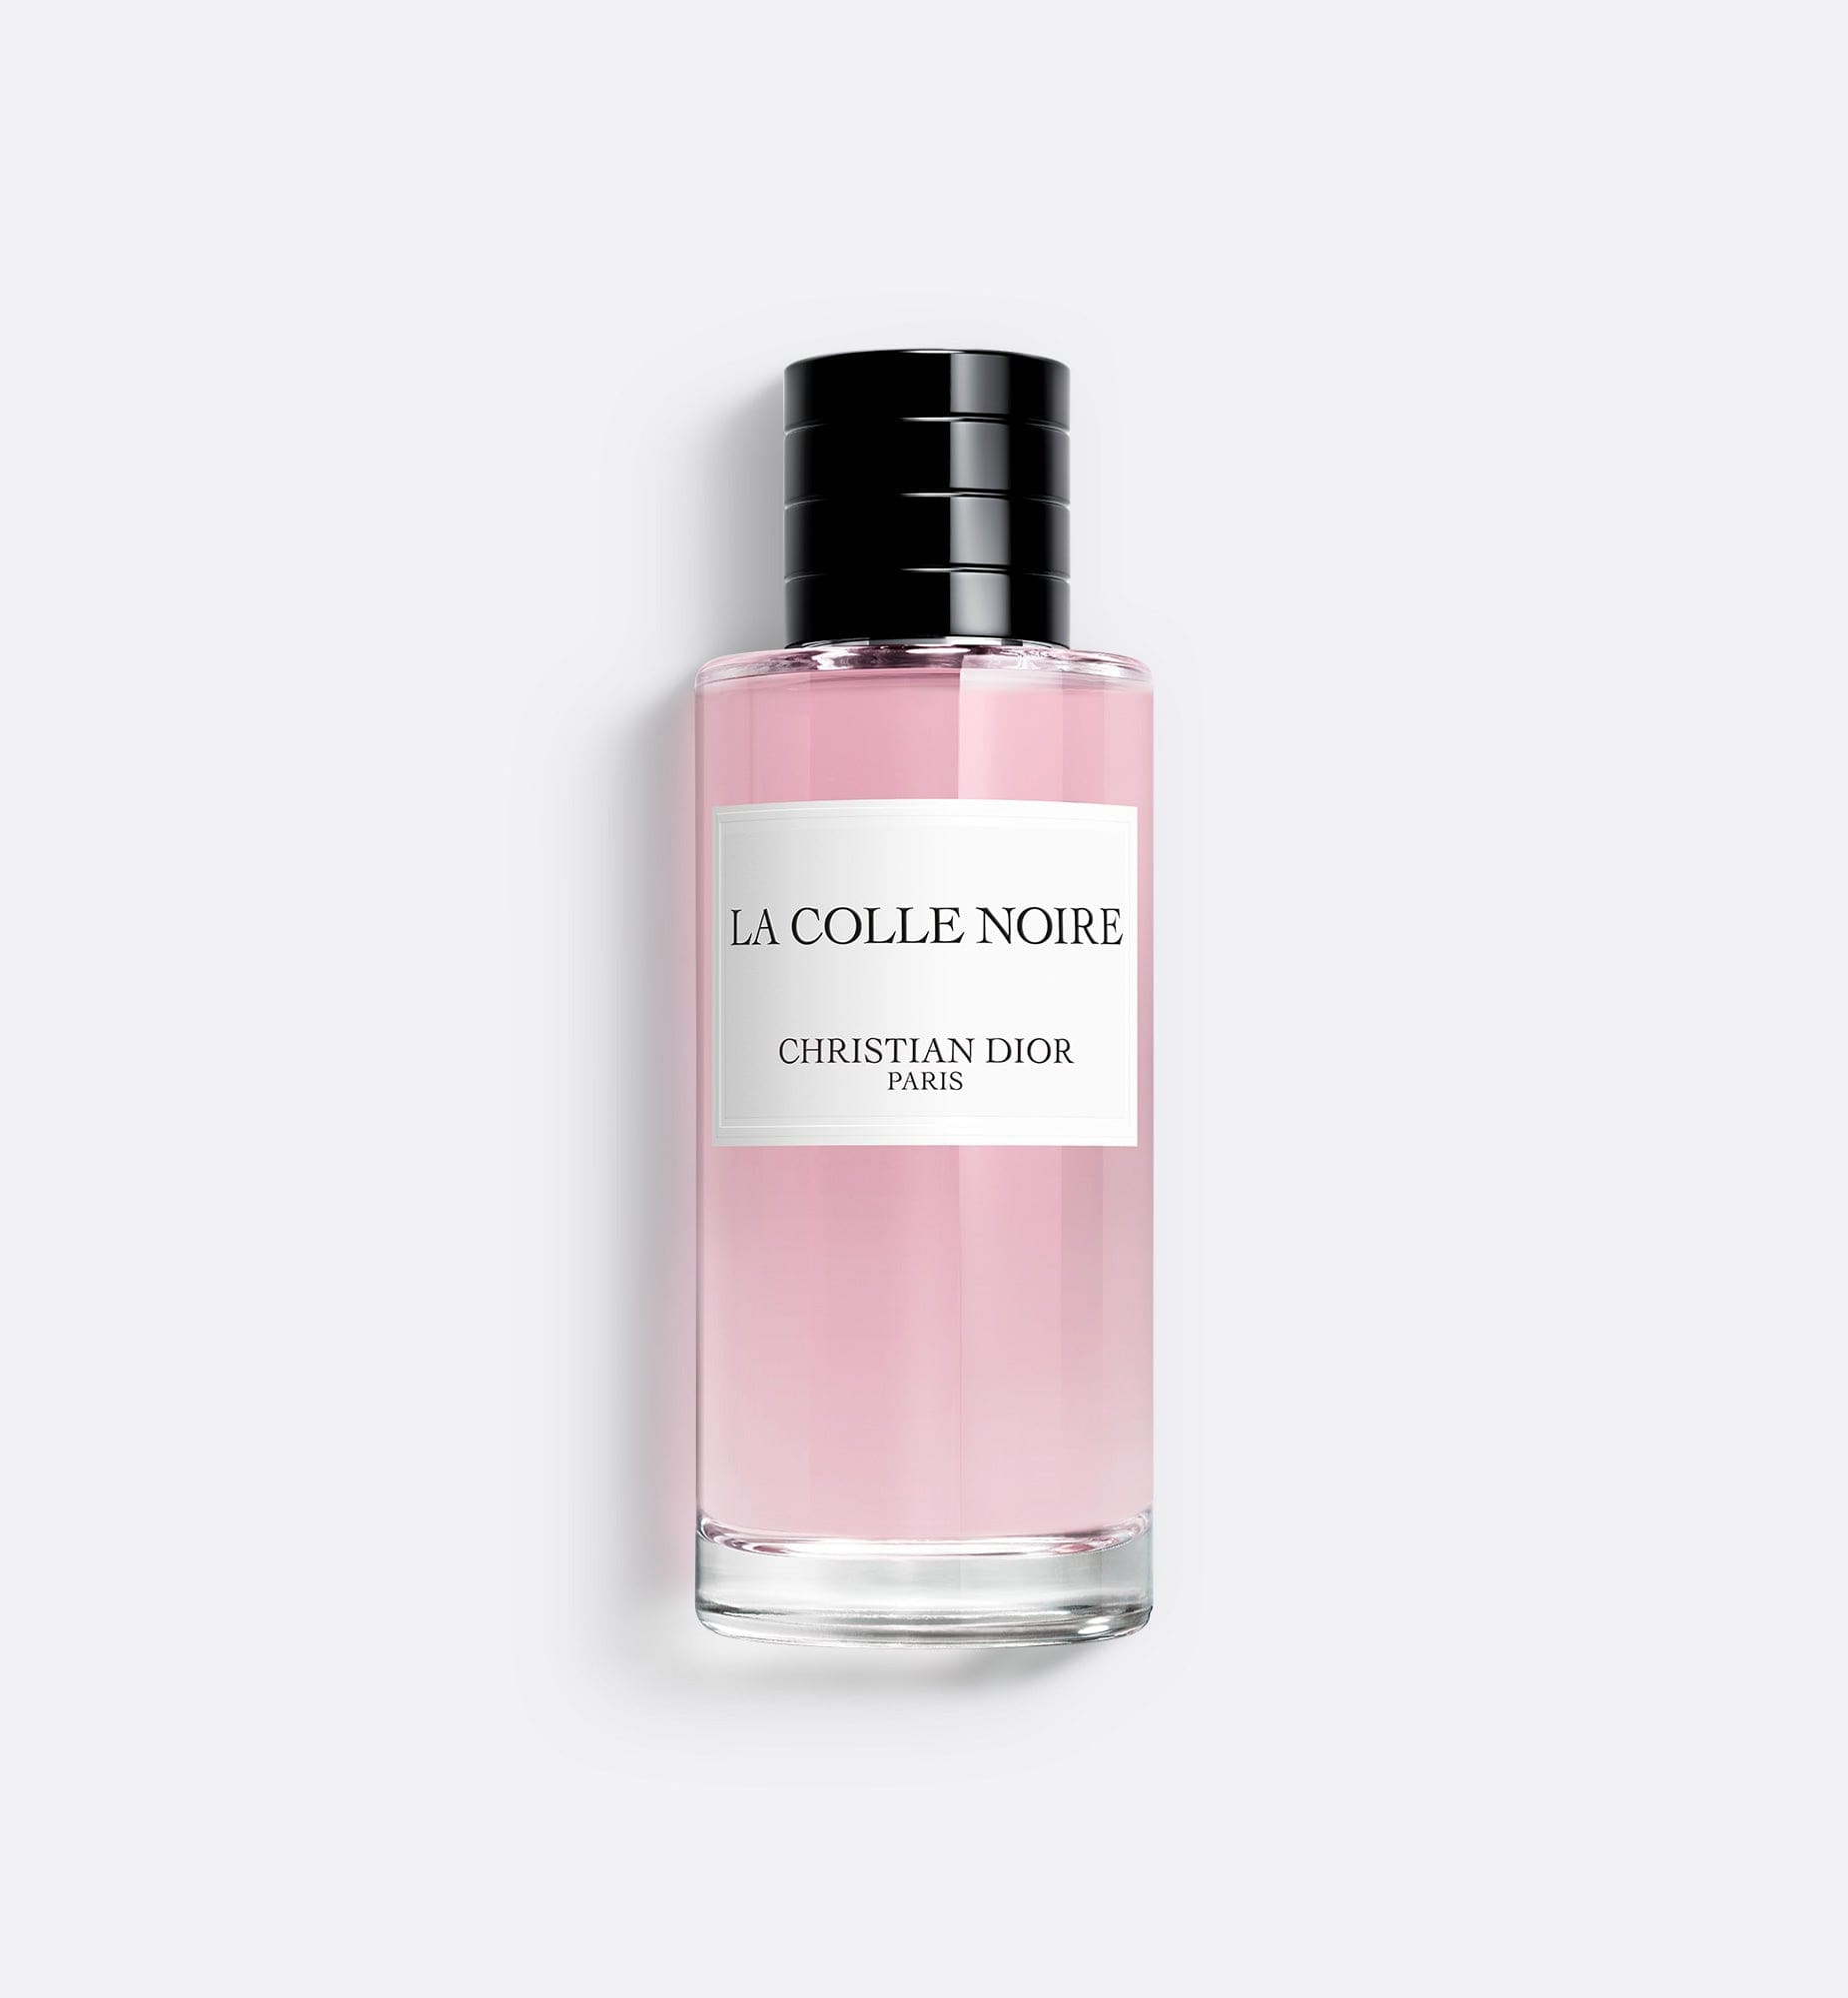 La Colle Noire香薰: 花香調的中性香水| Dior Beauty HK